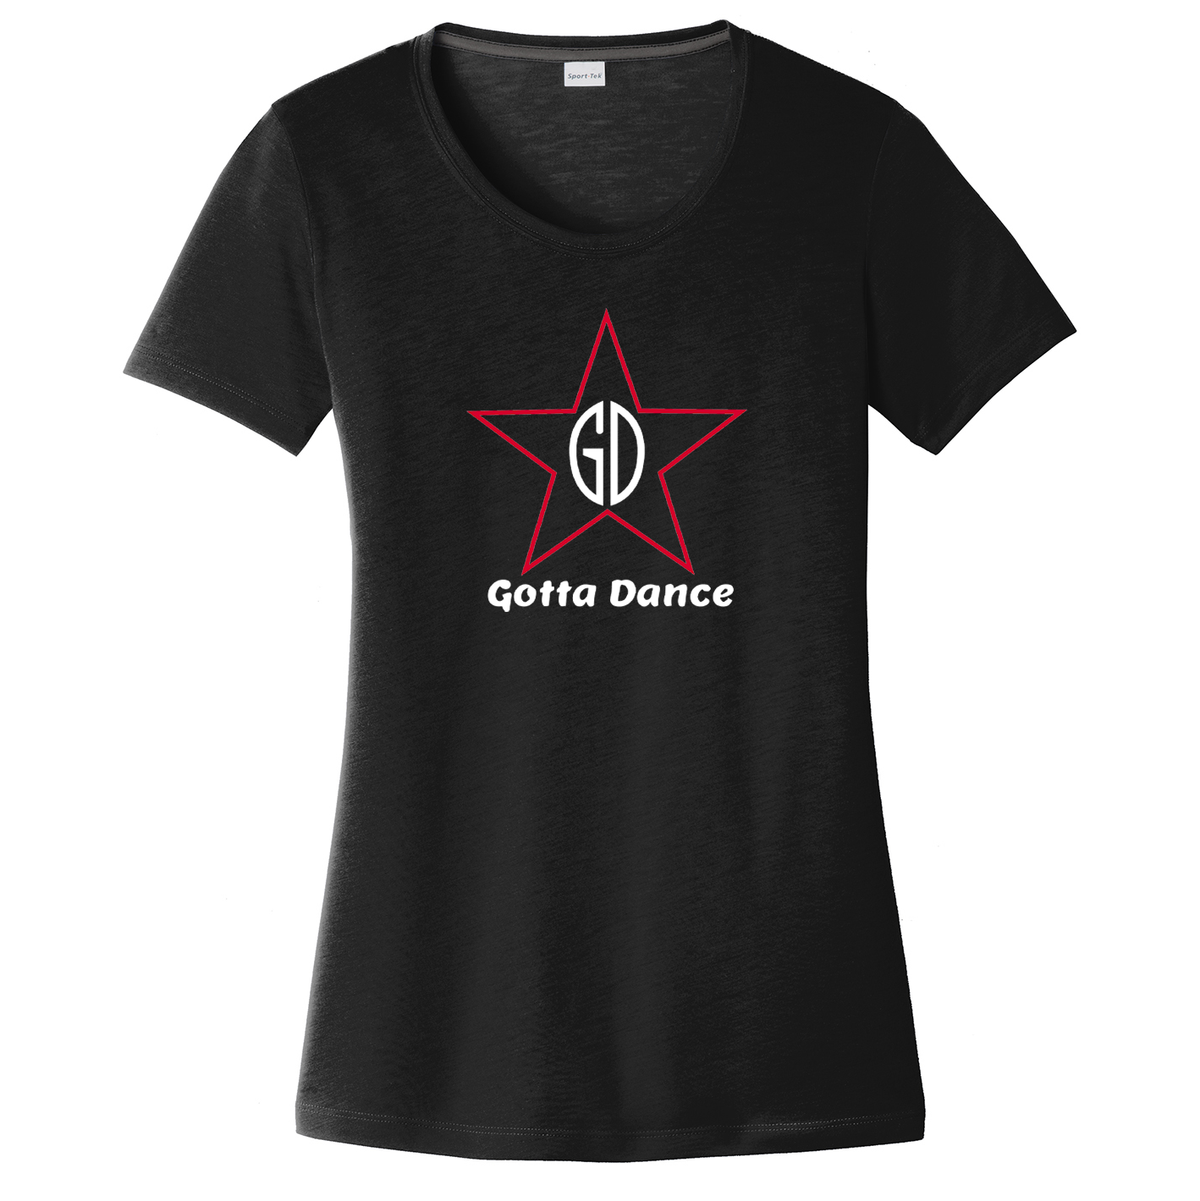 Gotta Dance Women's CottonTouch Performance T-Shirt